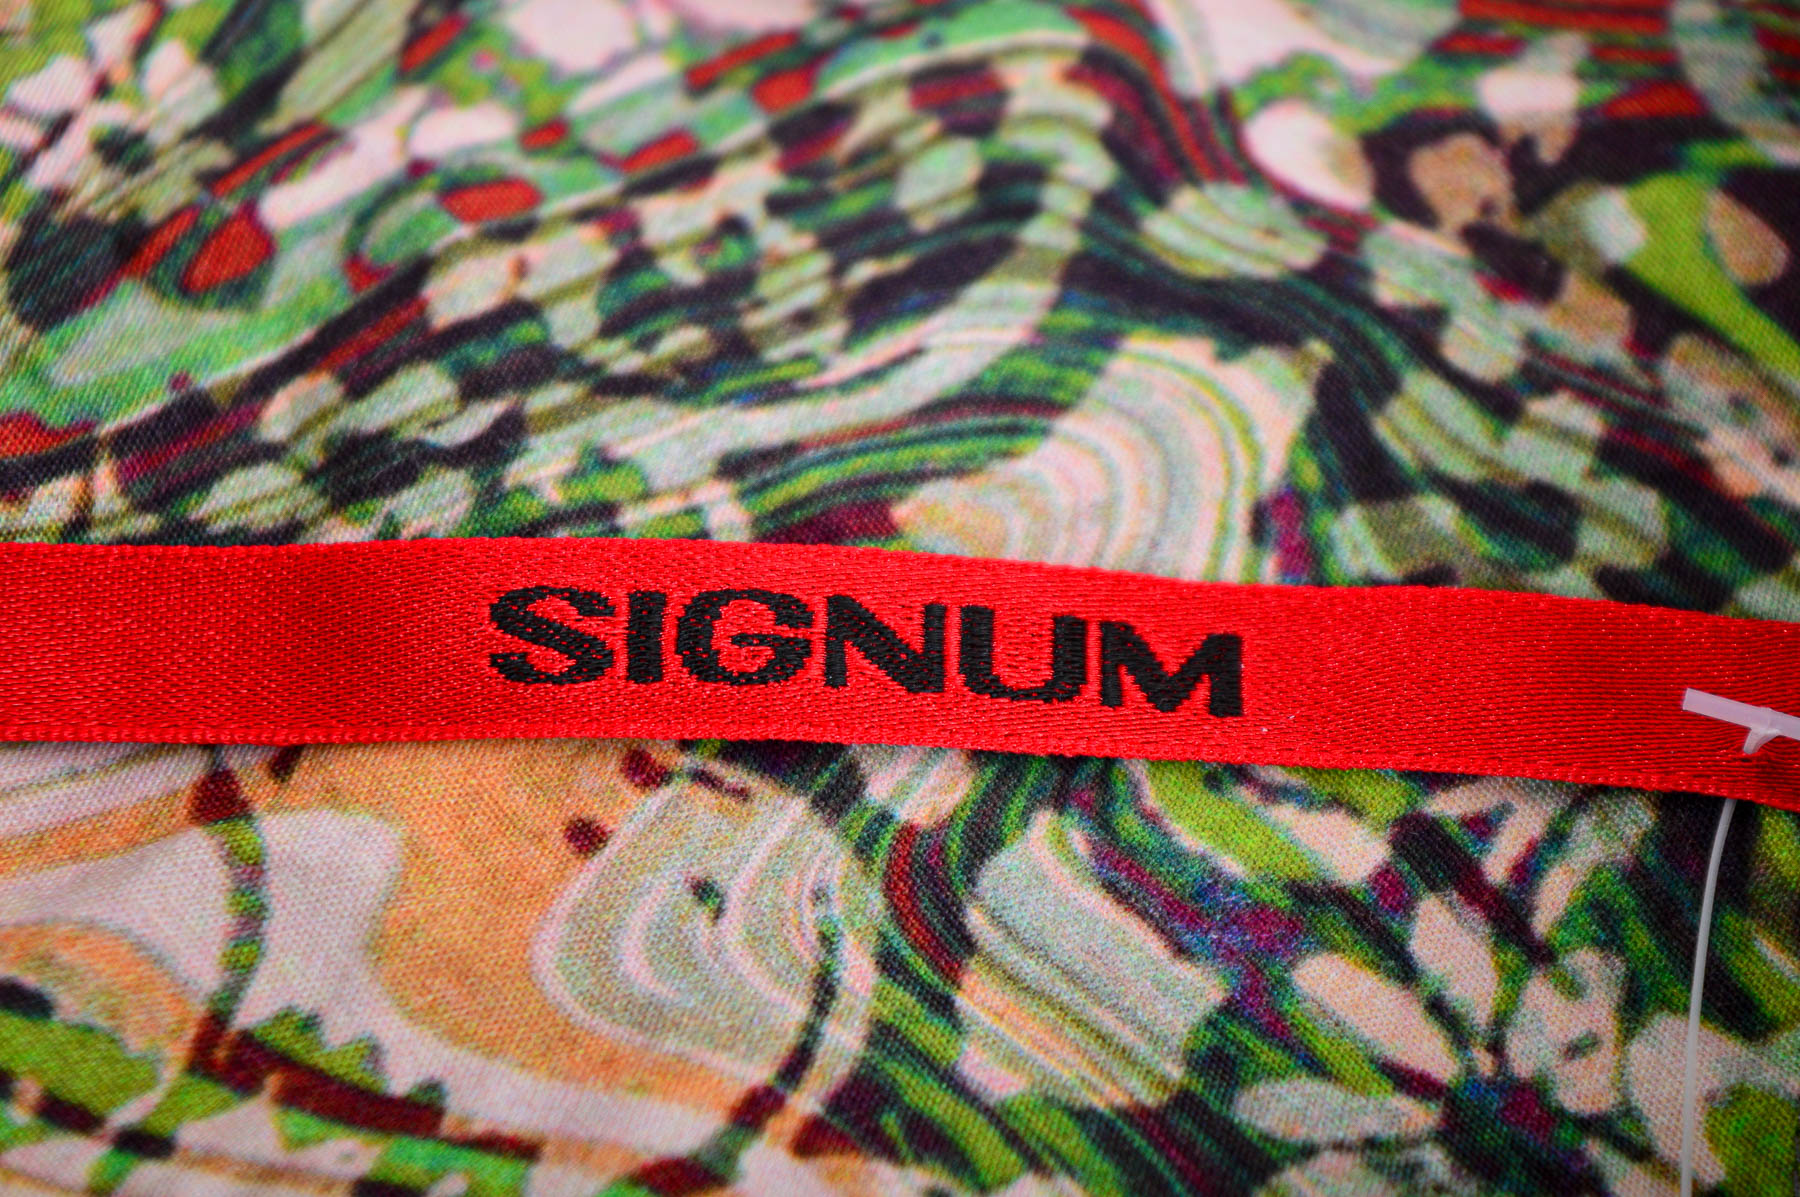 Ανδρικό πουκάμισο - Signum - 2